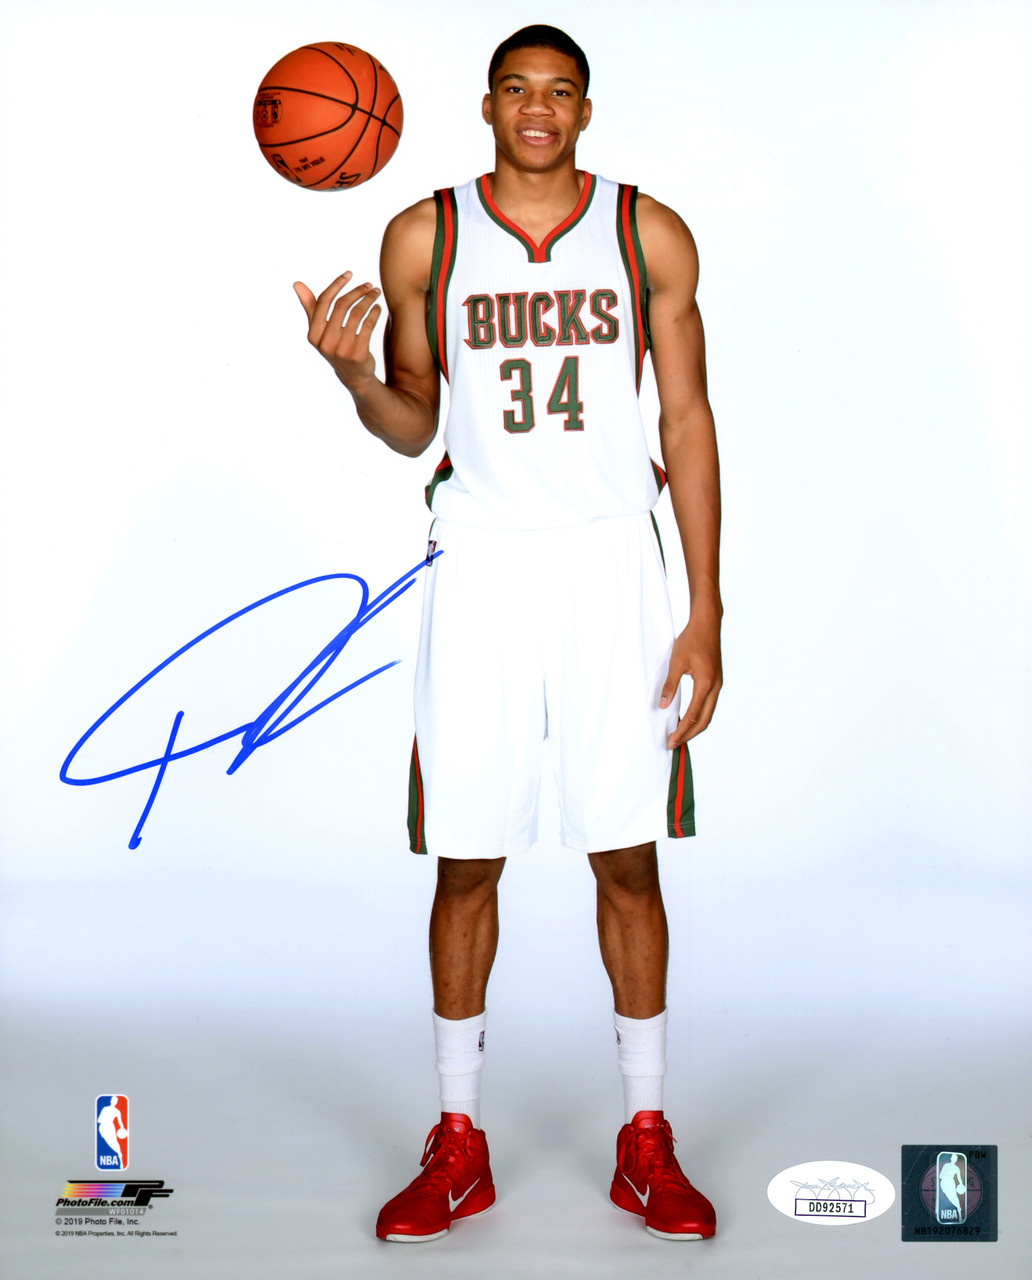 Giannis Antetokounmpo Autographed Green Milwaukee Basketball